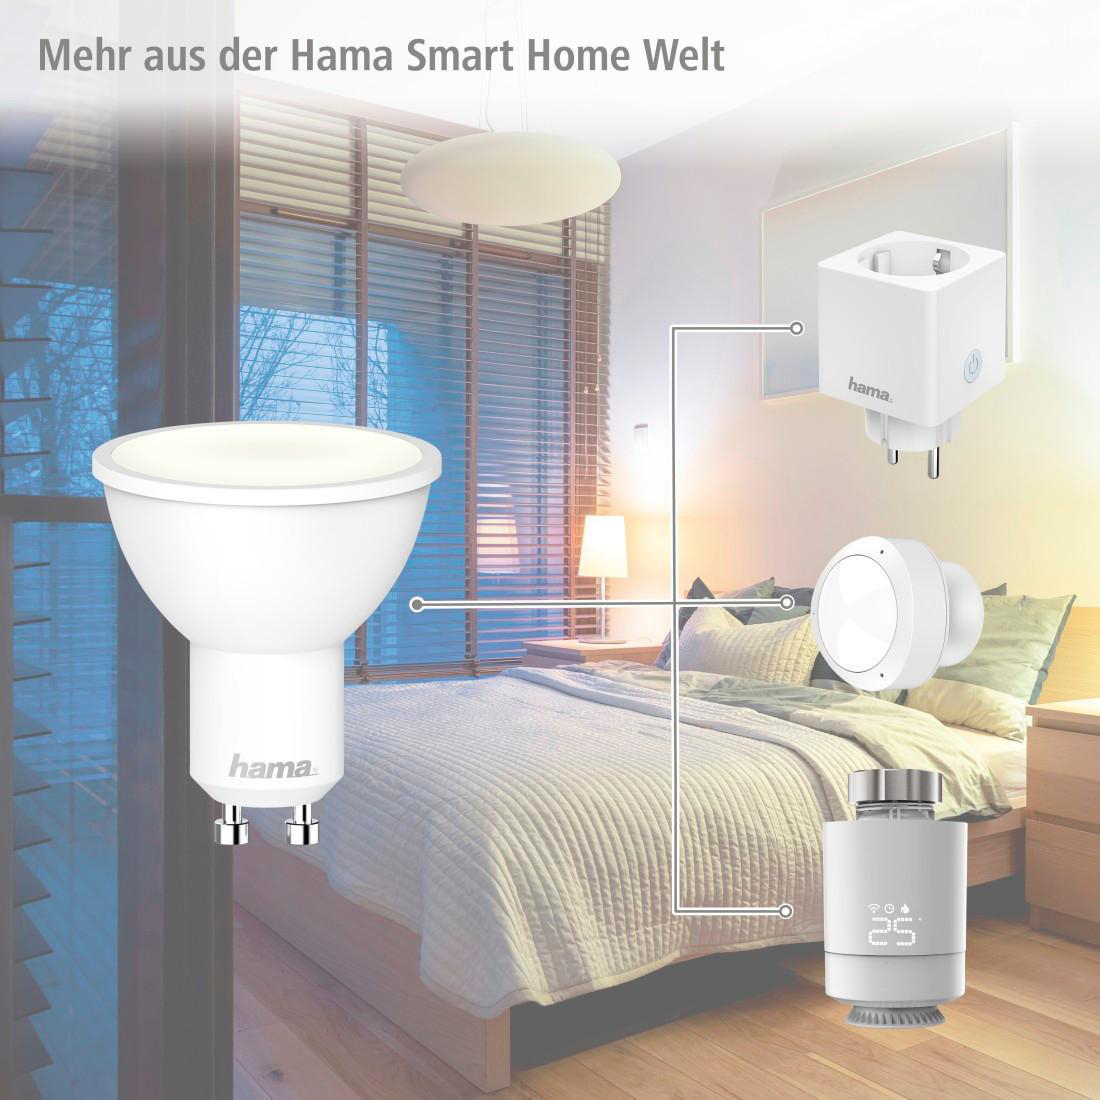 bis oder Kaltweiß/Warmweiß W Lampe, GU10, App Tageslicht WLAN-LED HAMA Sprachsteuerung, 5.5